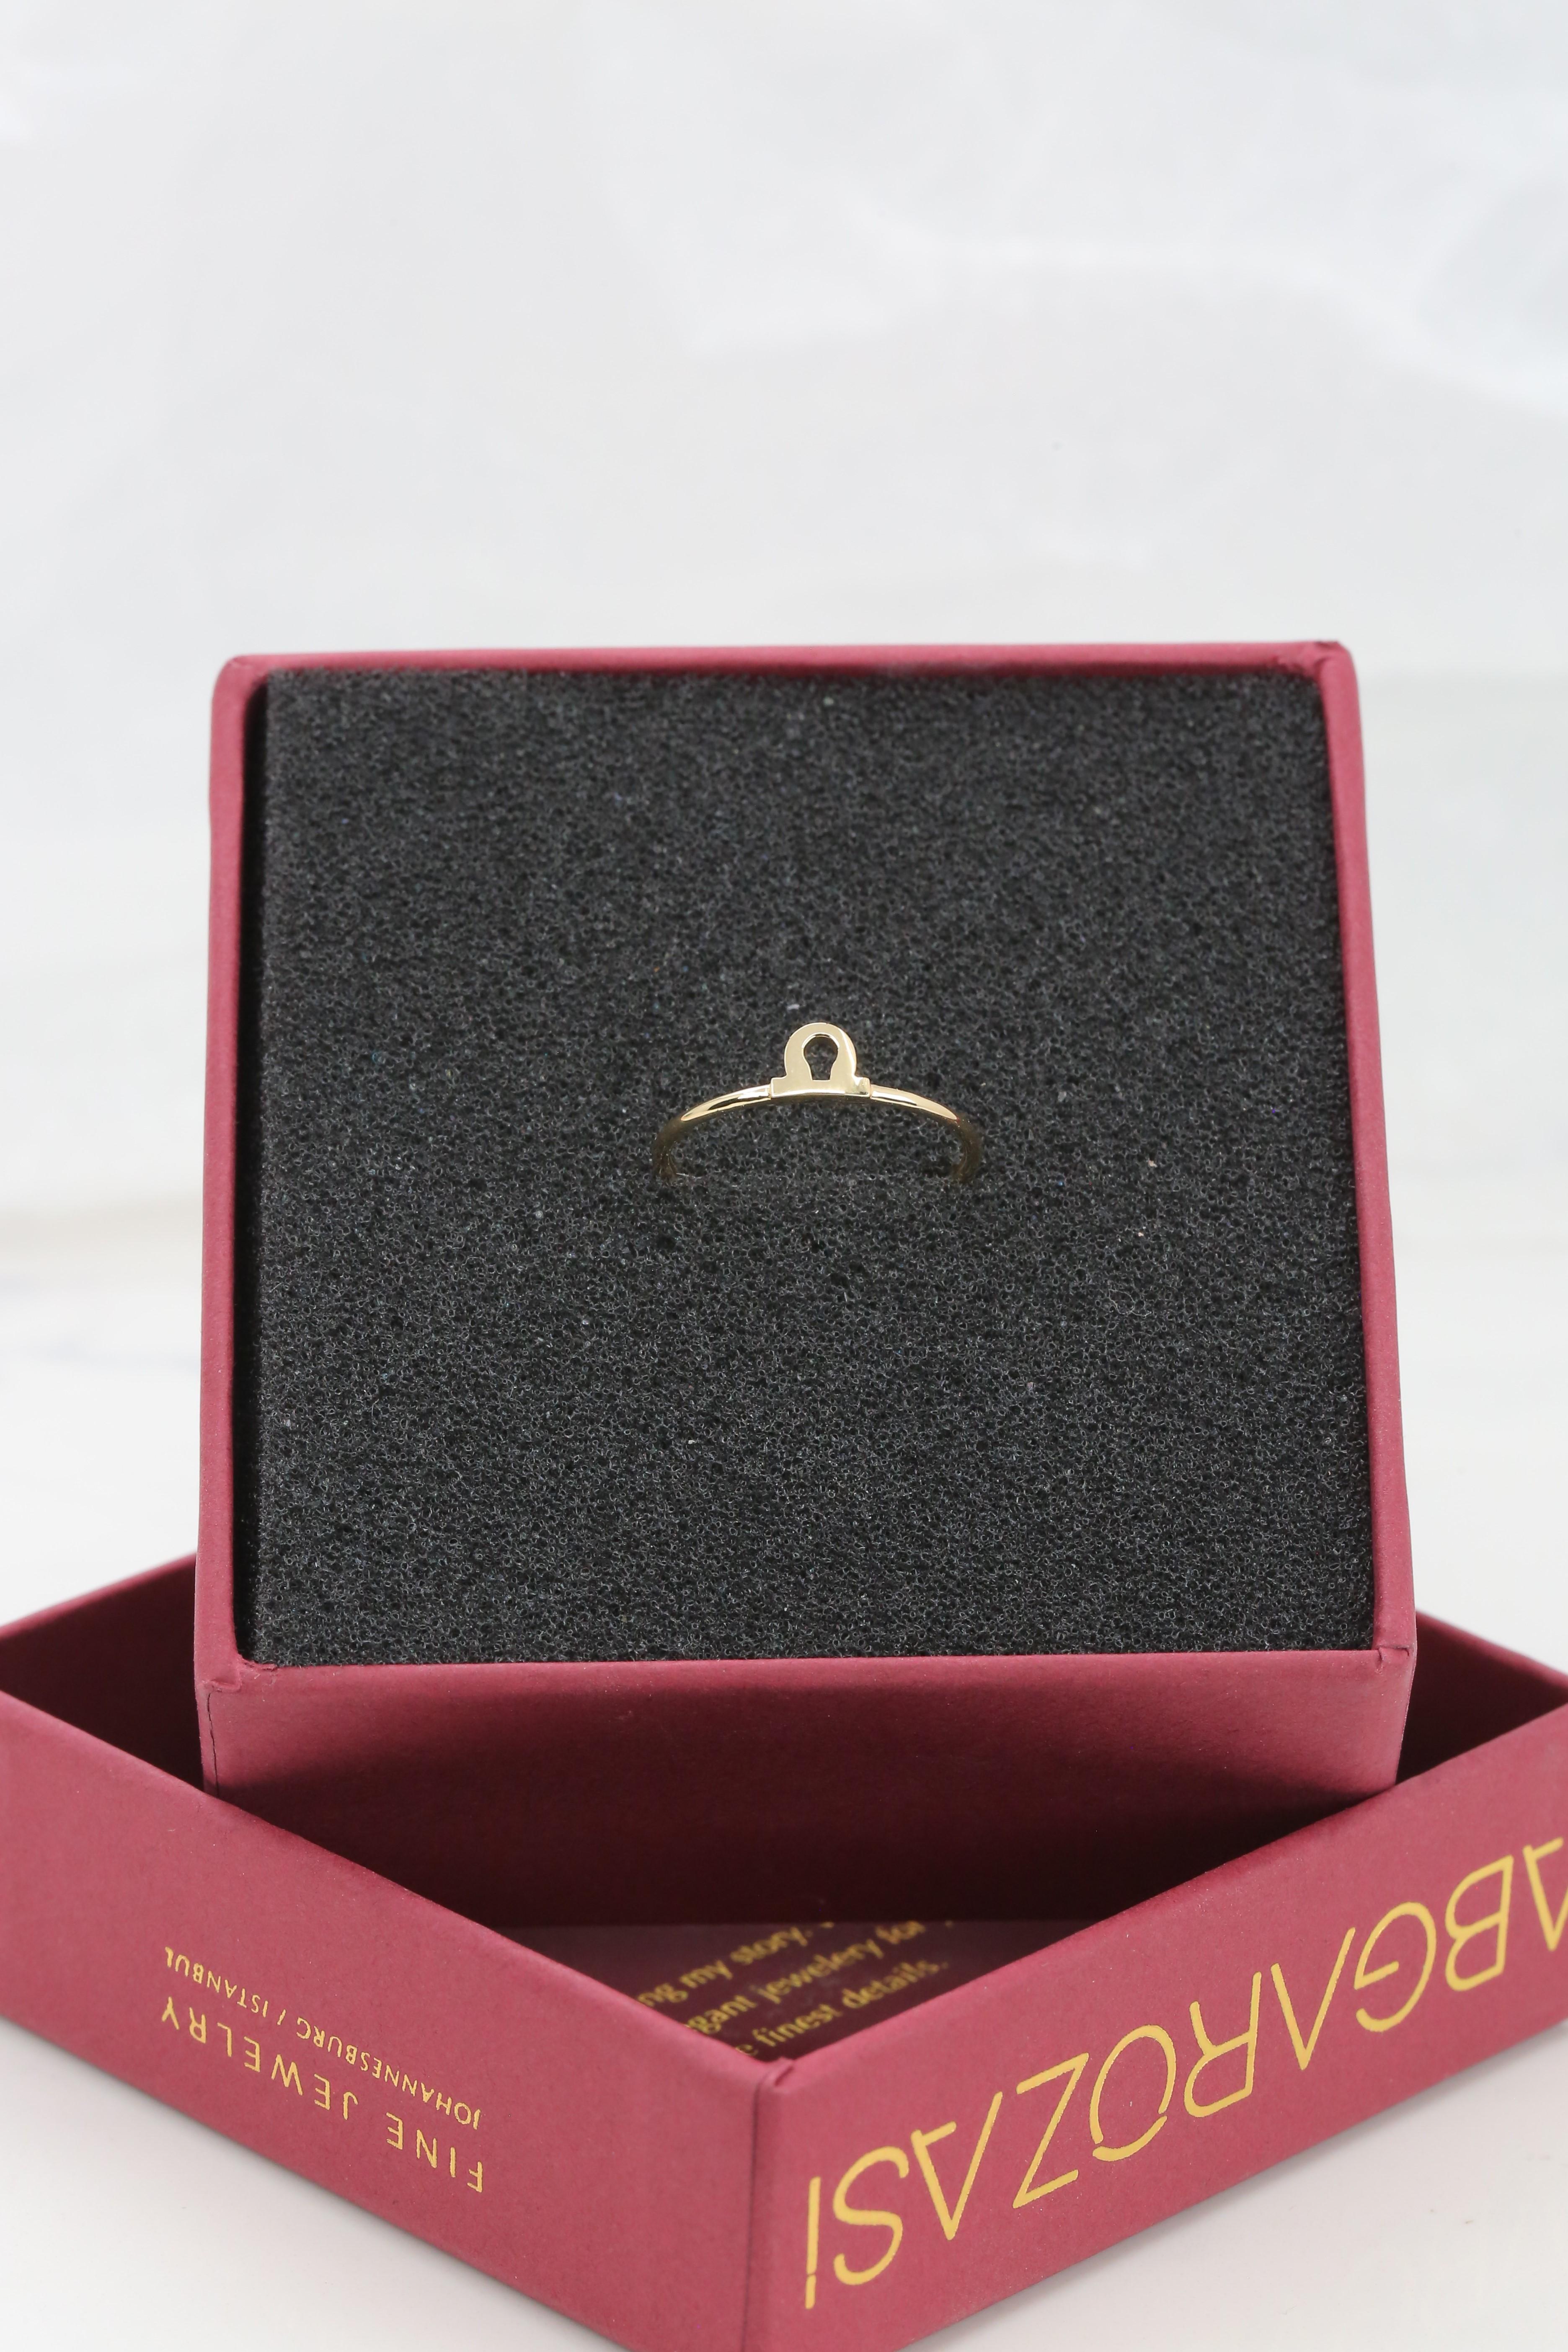 For Sale:  14K Gold Libra Zodiac Ring, Libra Sign Zodiac Ring 2